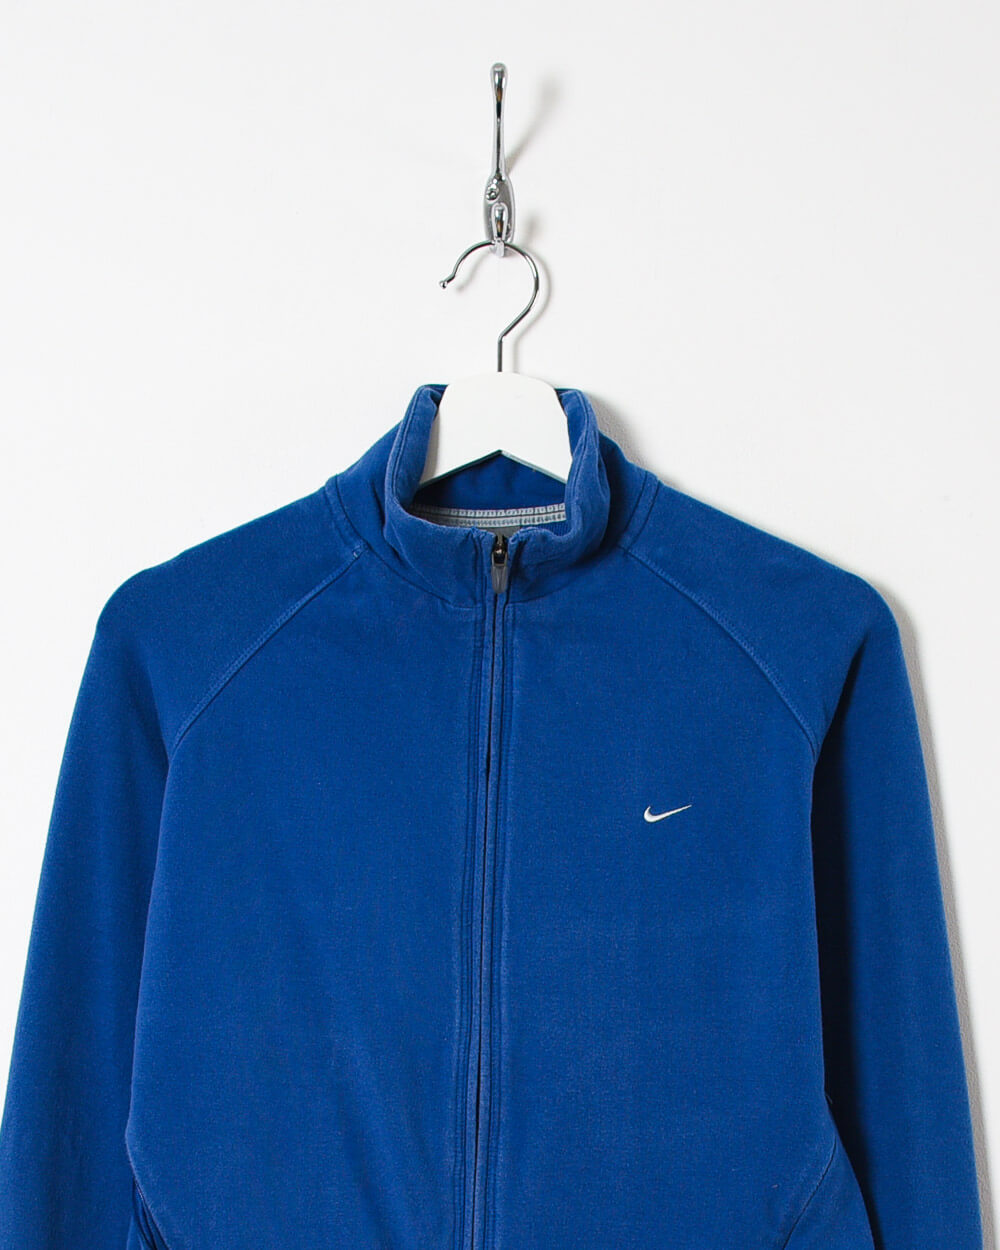 Blue Nike Women's Zip-Through Sweatshirt - Large